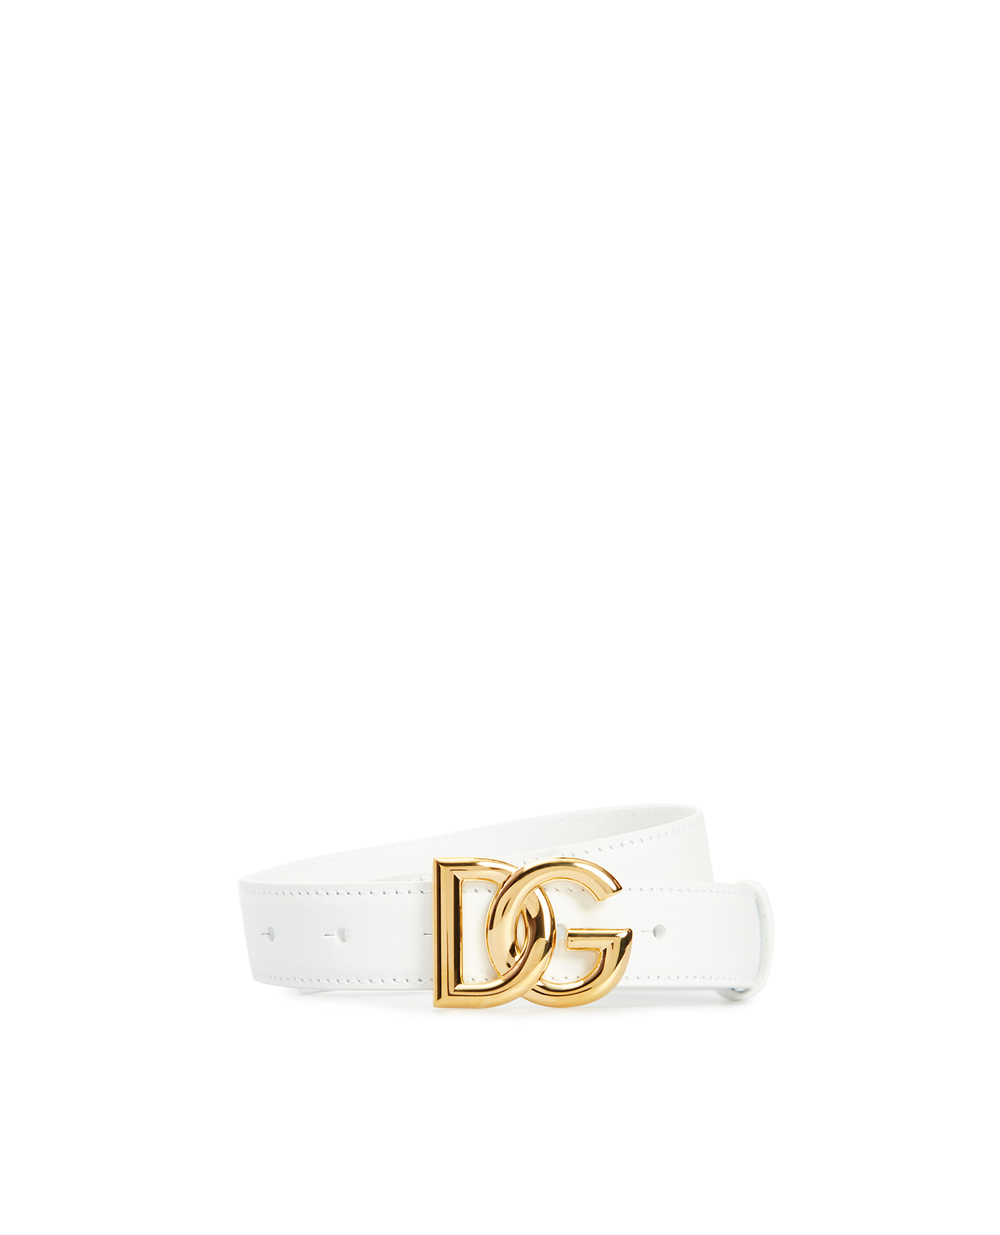 Кожаный ремень Dolce&Gabbana BE1447-AW576, белый цвет • Купить в интернет-магазине Kameron